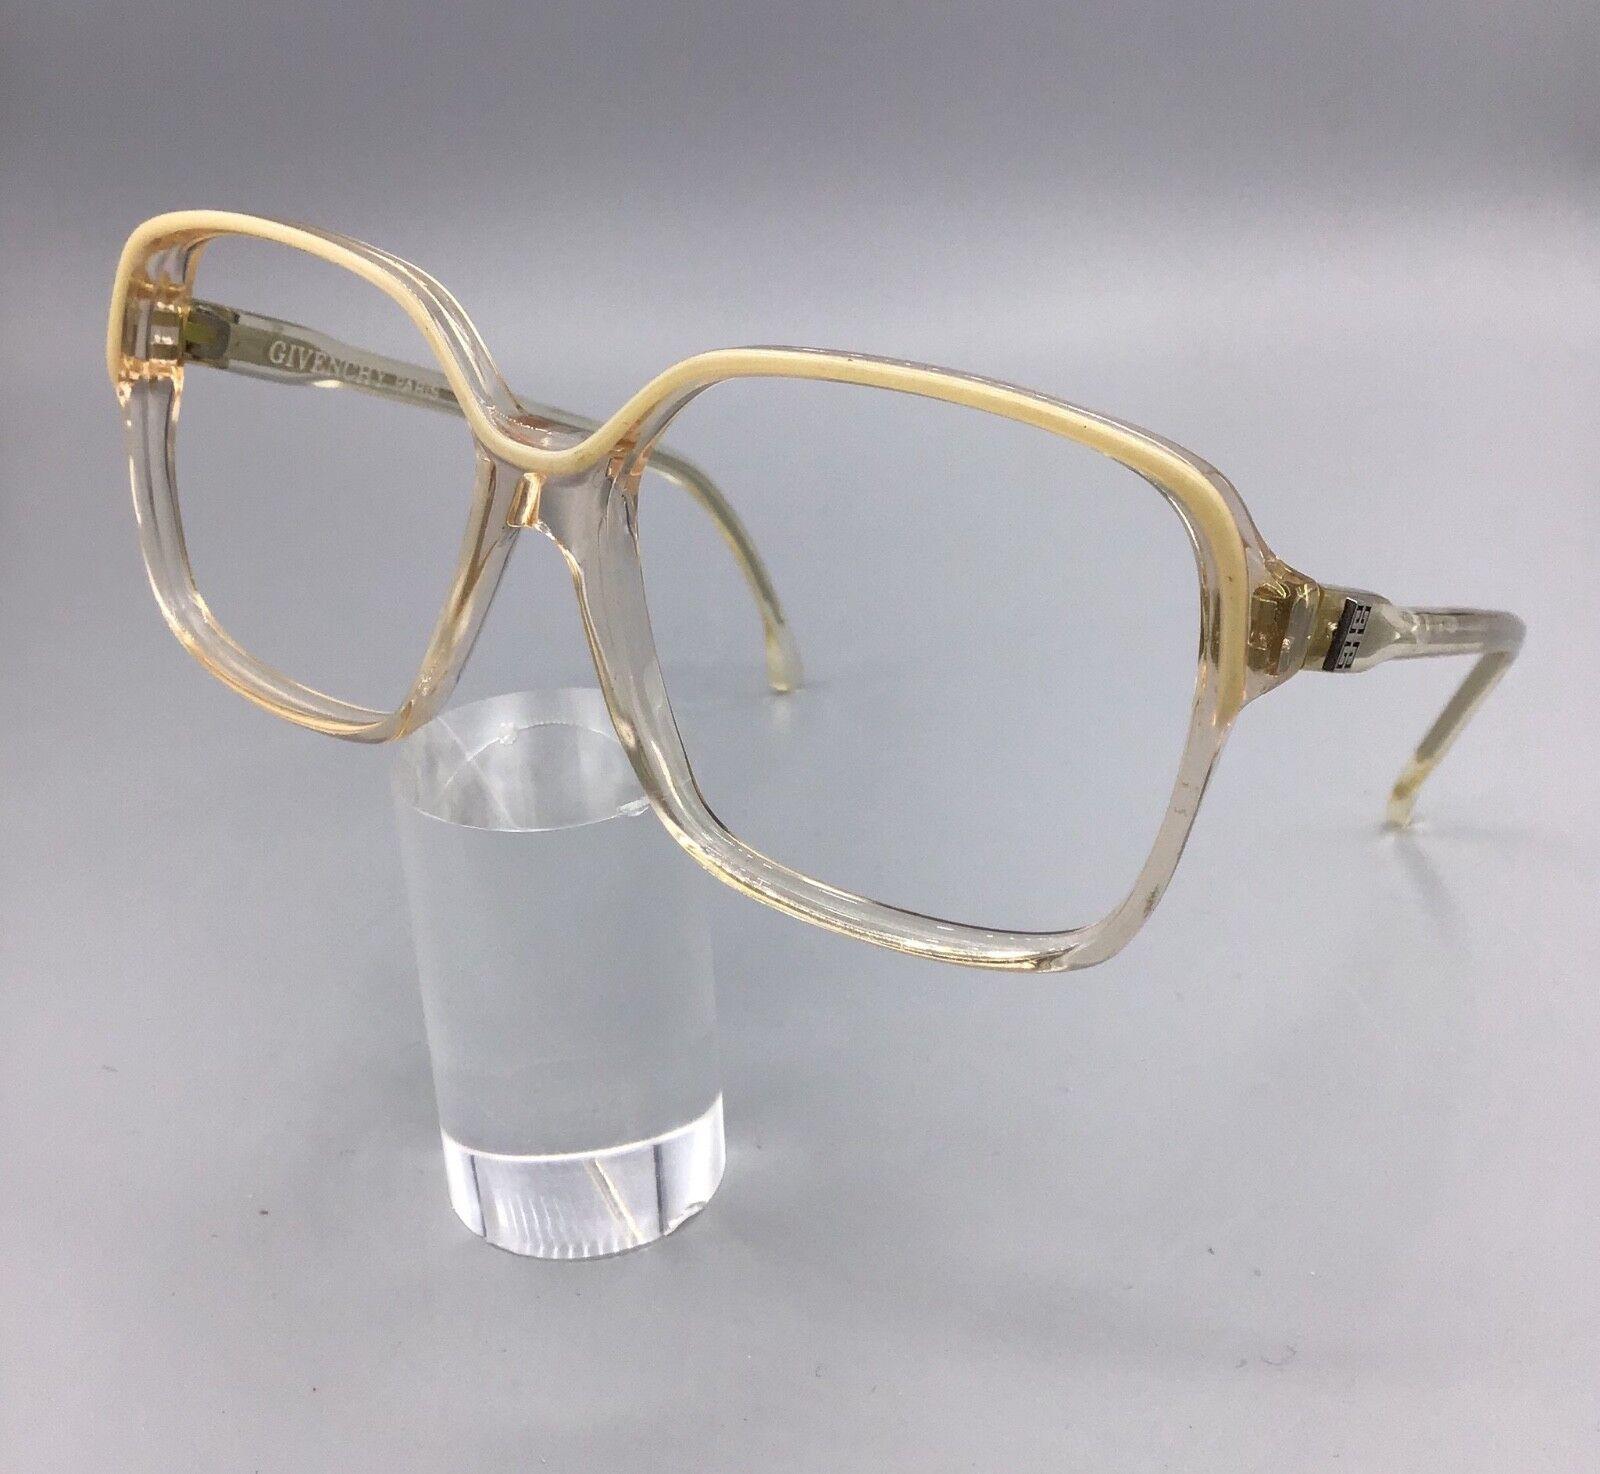 Givenchy Paris occhiale vintage eyewear frame brillen lunettes model ref 917 color 839